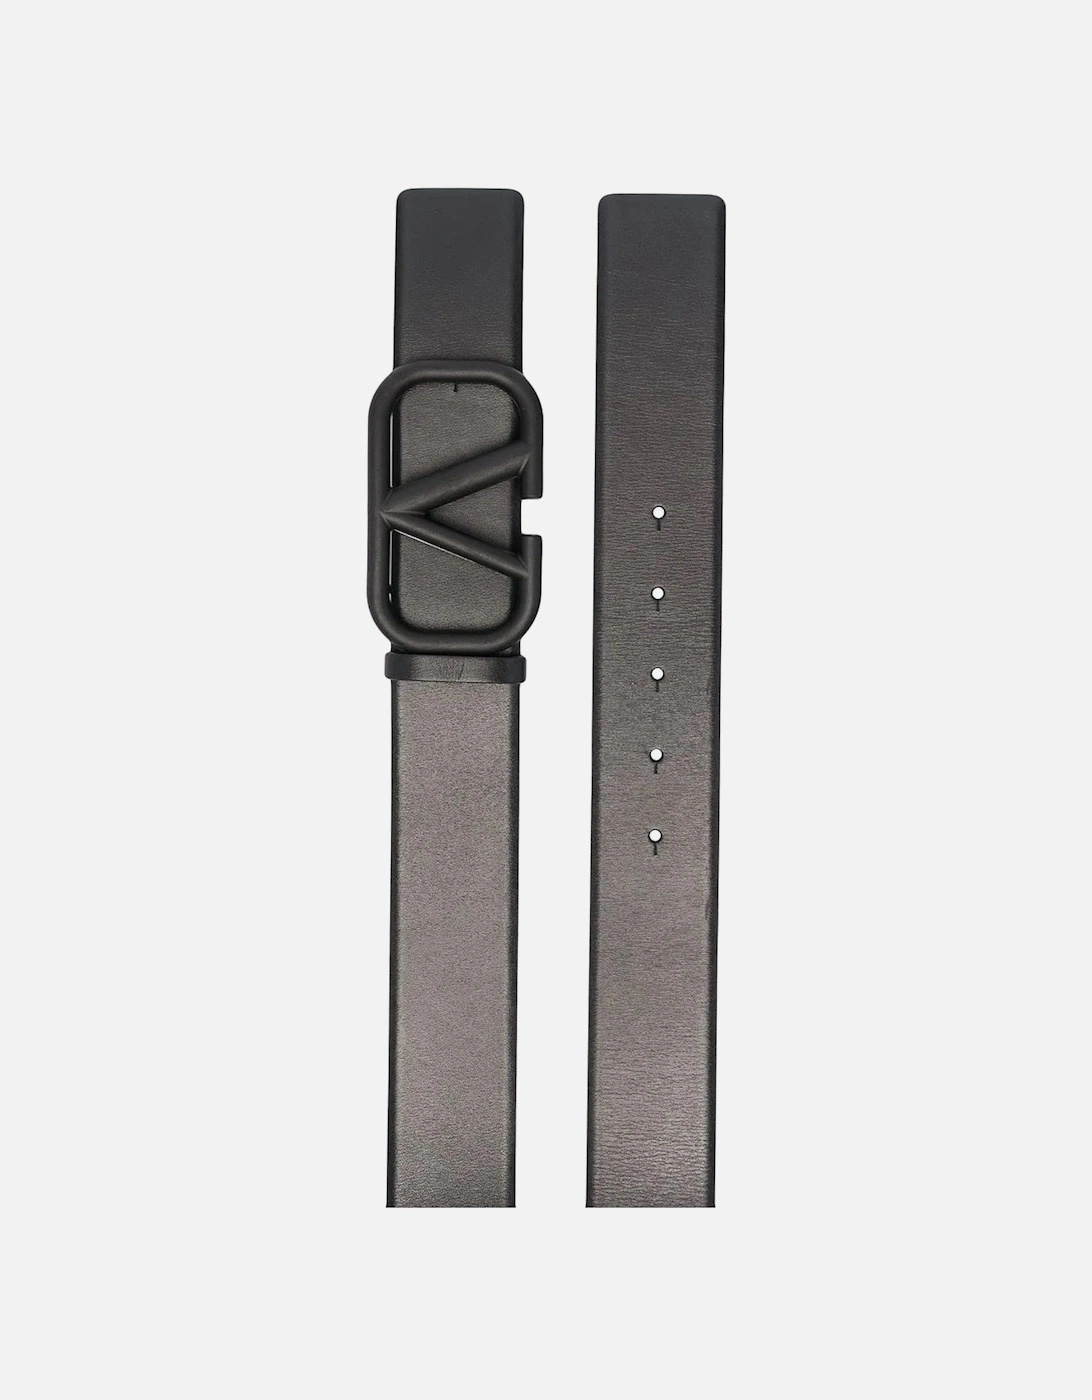 V-Logo leather belt